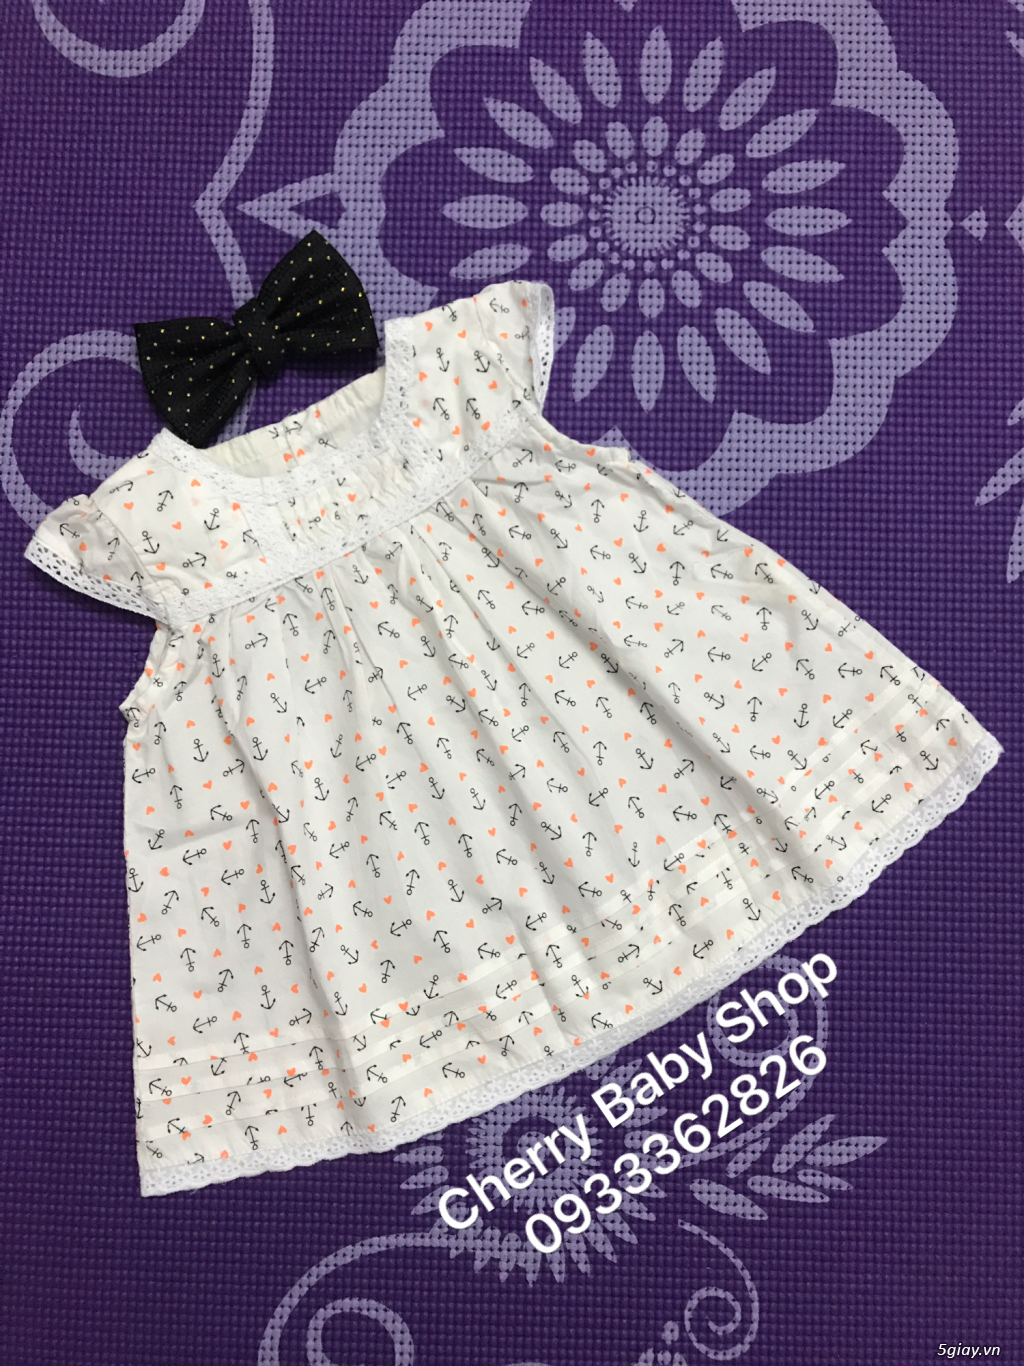 Cherry baby shop:: Chuyên thời trang trẻ em đẹp và chất lượng, sỉ-lẻ!! - 3